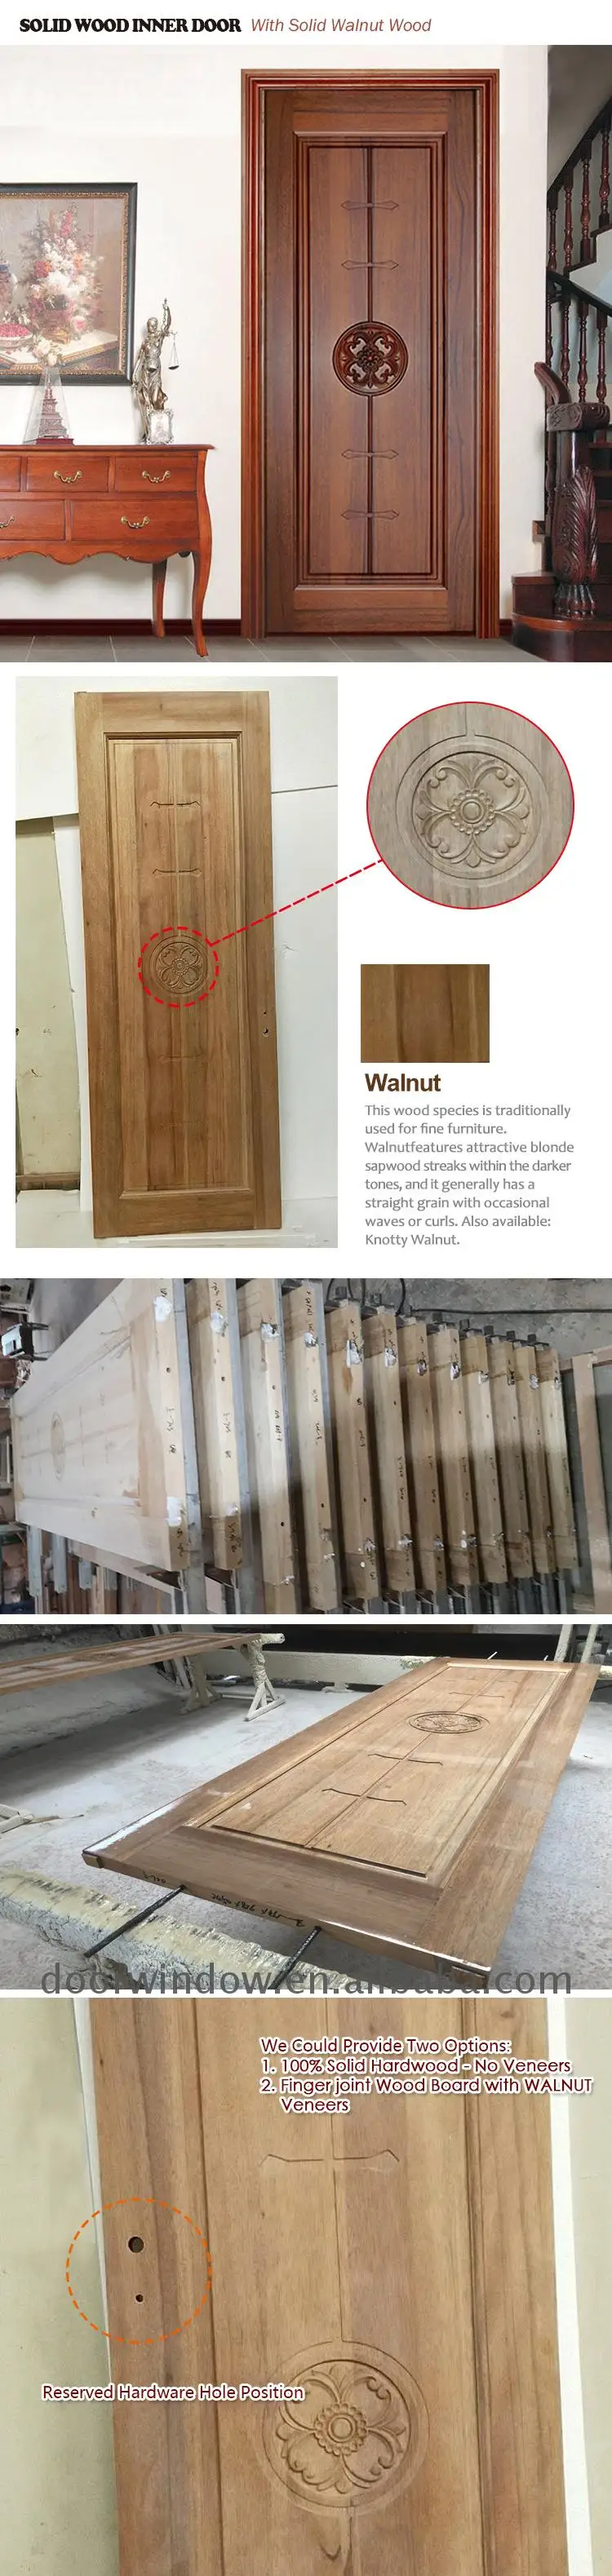 Wooden window door models wooden doors prices wooden door with hinge